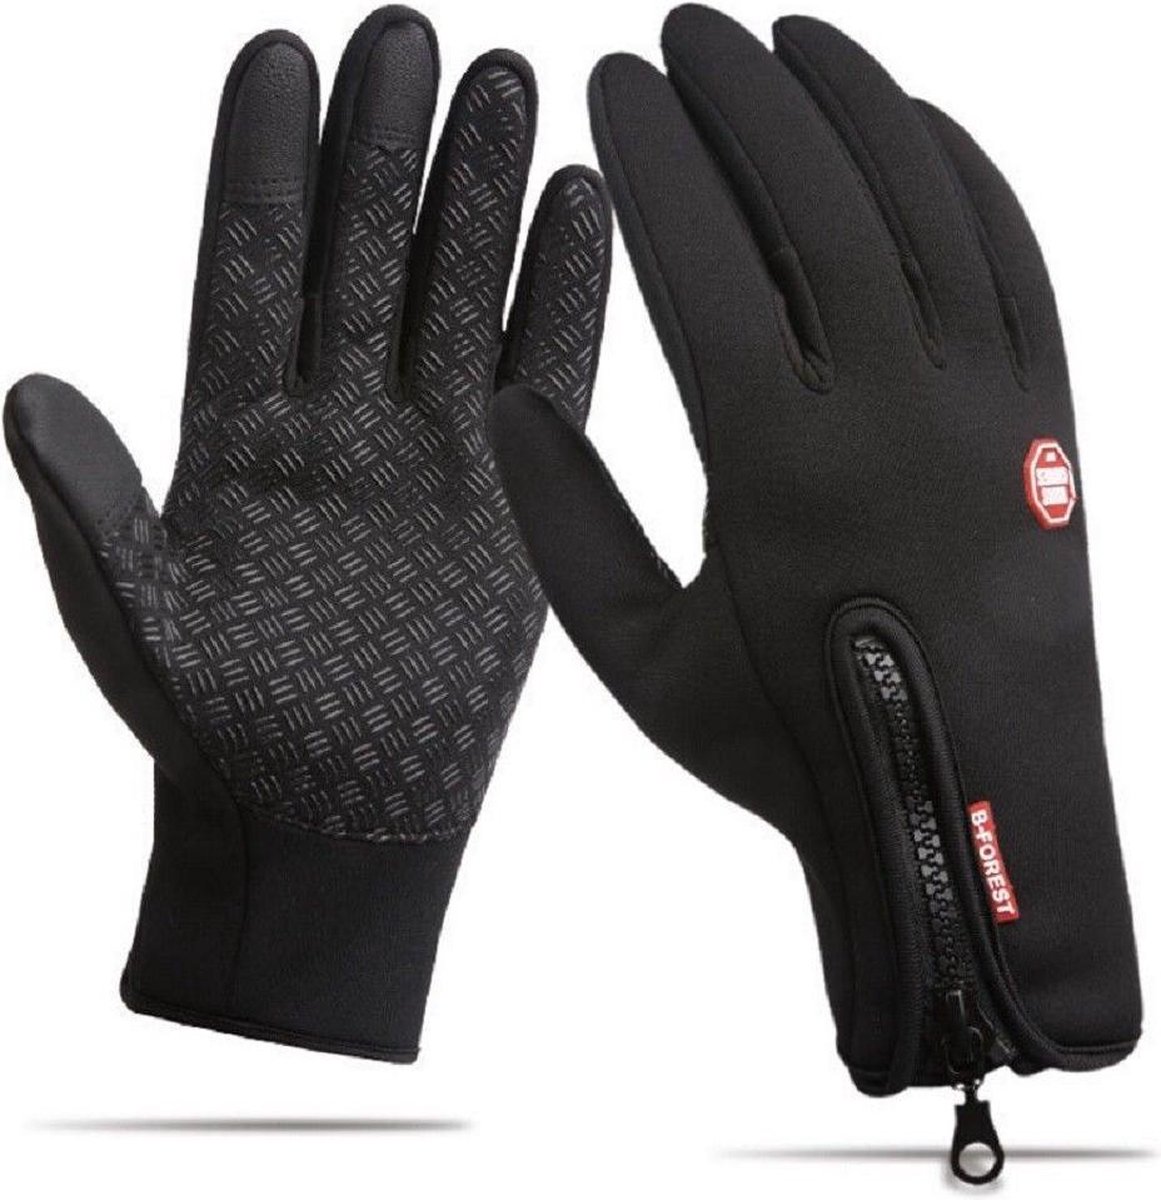 WiseGoods Handschoenen Waterdicht Touchscreen - Wintersport - Ski Gloves Winddicht - Voor Smartphones - Sporthandschoenen - Zwart